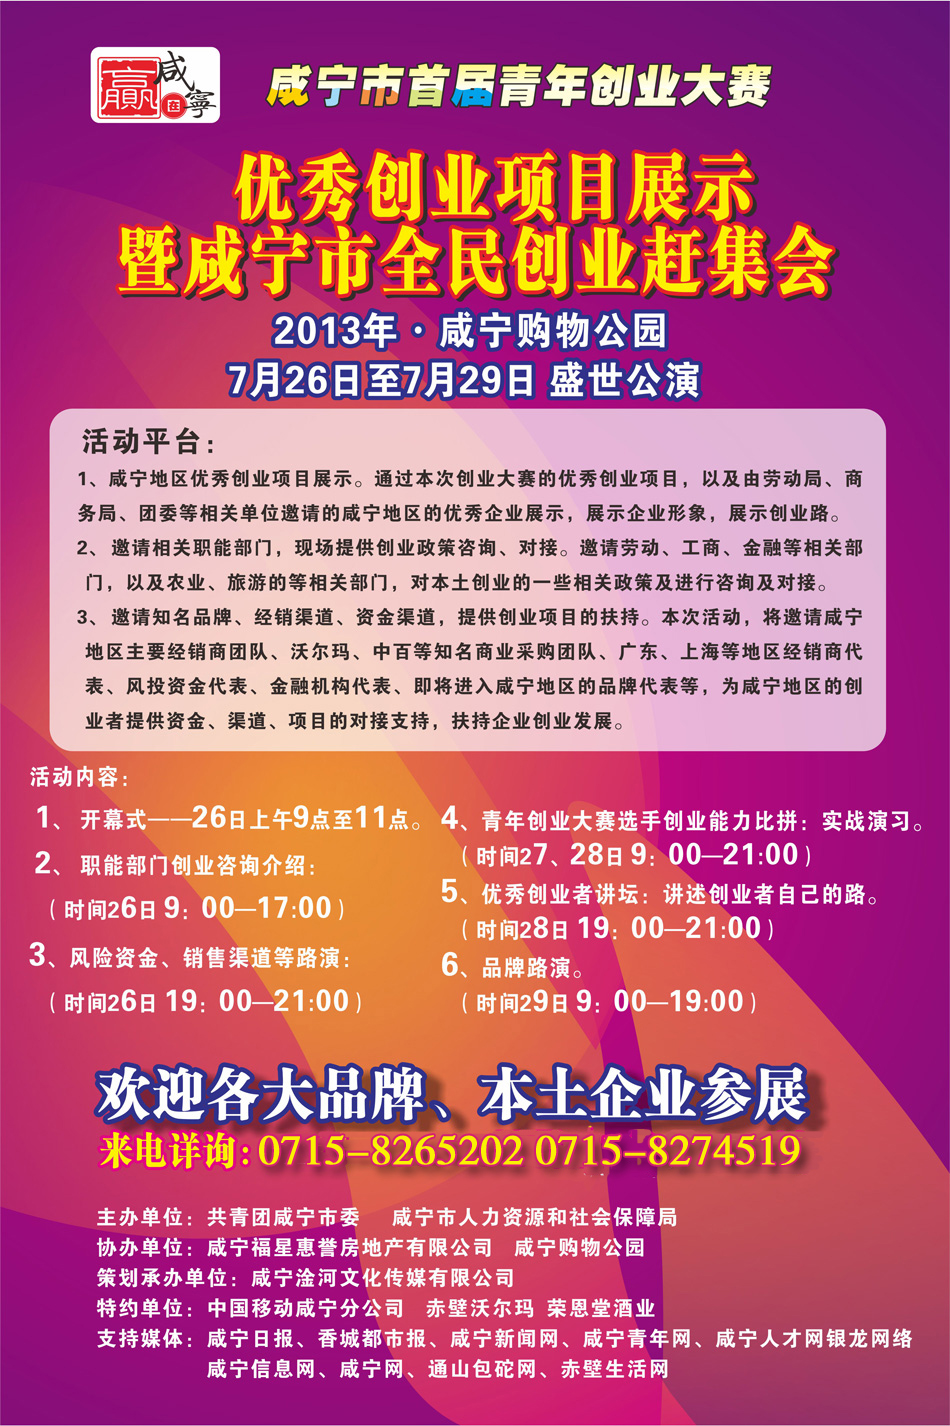 咸宁市首届青年创业优秀创业项目展示会